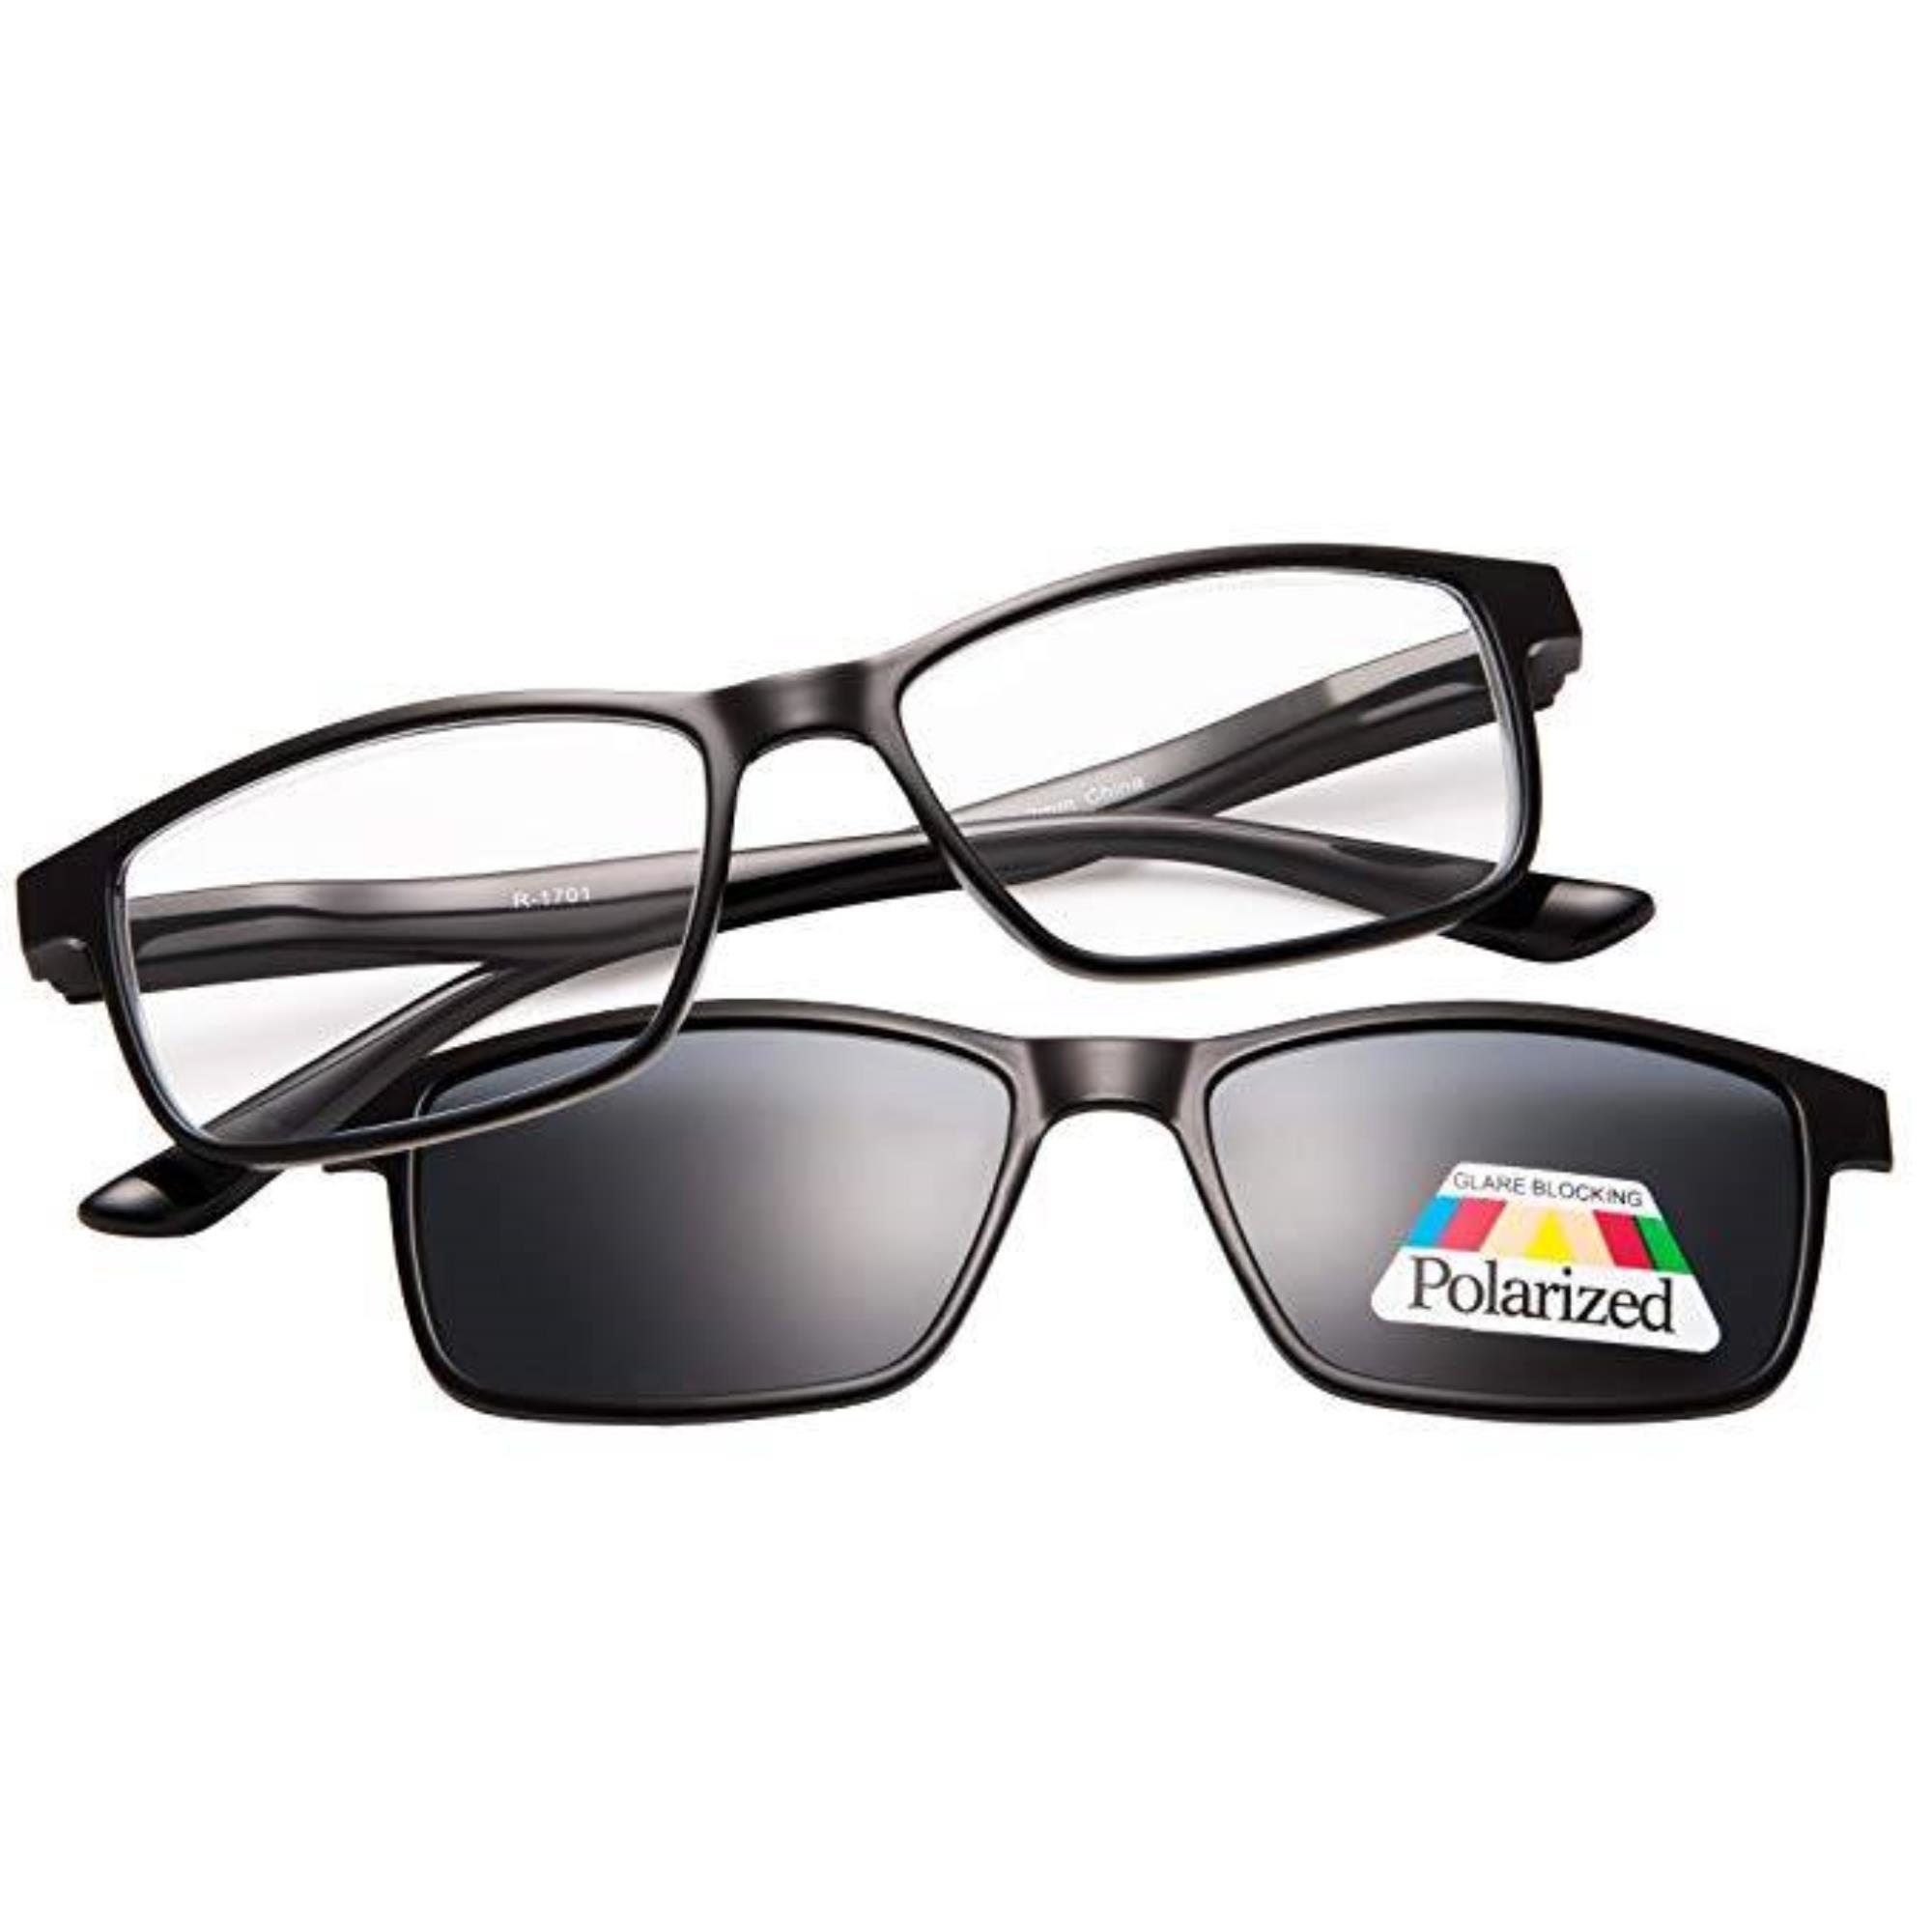 Chaise longue Uitwerpselen Afhankelijk Benson Leesbril met magneet zonnebril - Zwart - Sterkte +2.00 kopen? -  2Cheap